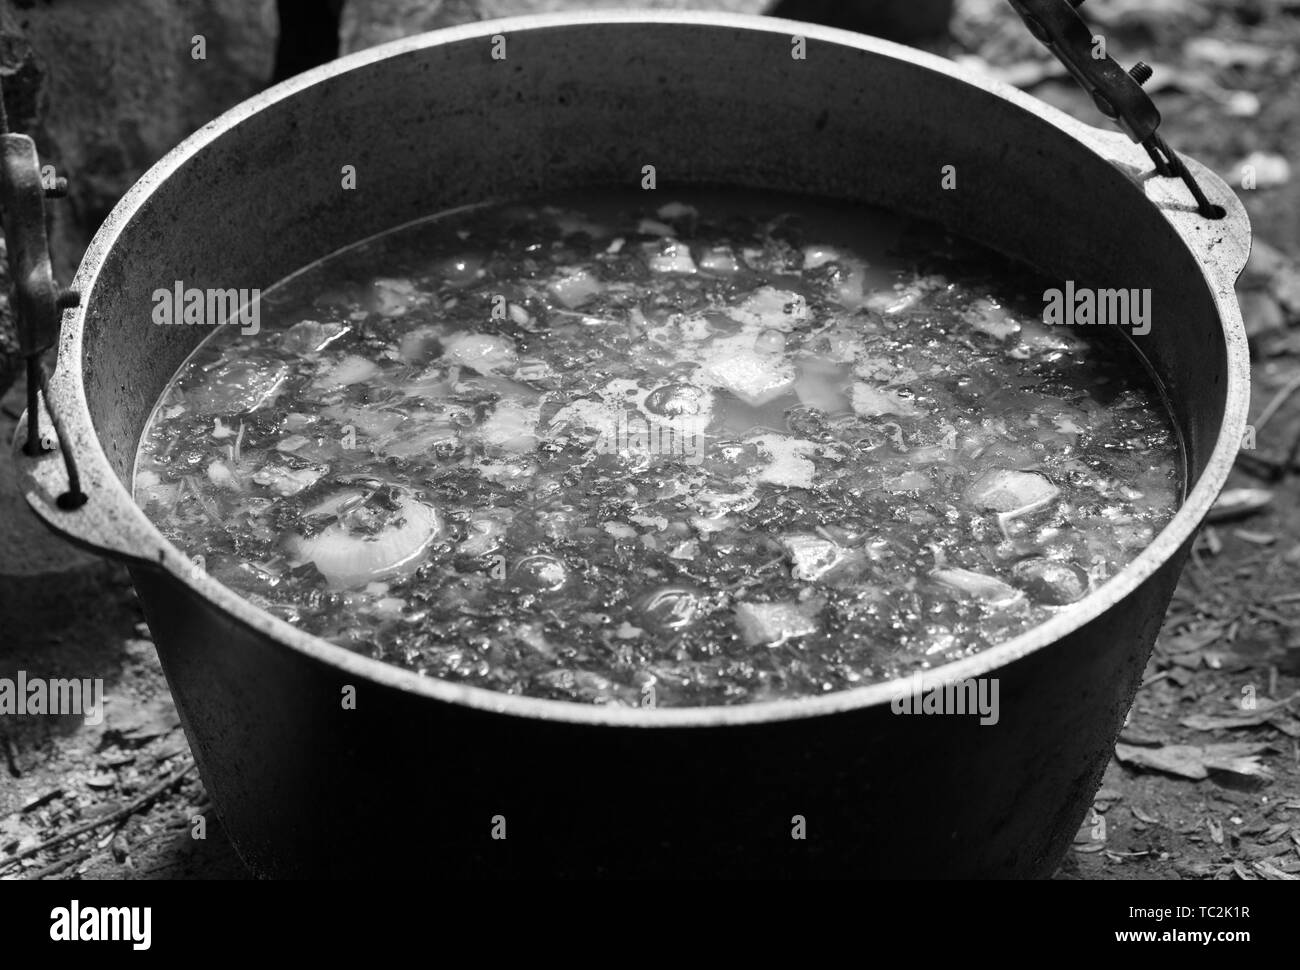 Soupe chaude fraîchement préparé dans le chaudron de suie feu de camp. Camping en plein air de la cuisson. Image aux tons noir et blanc. Banque D'Images